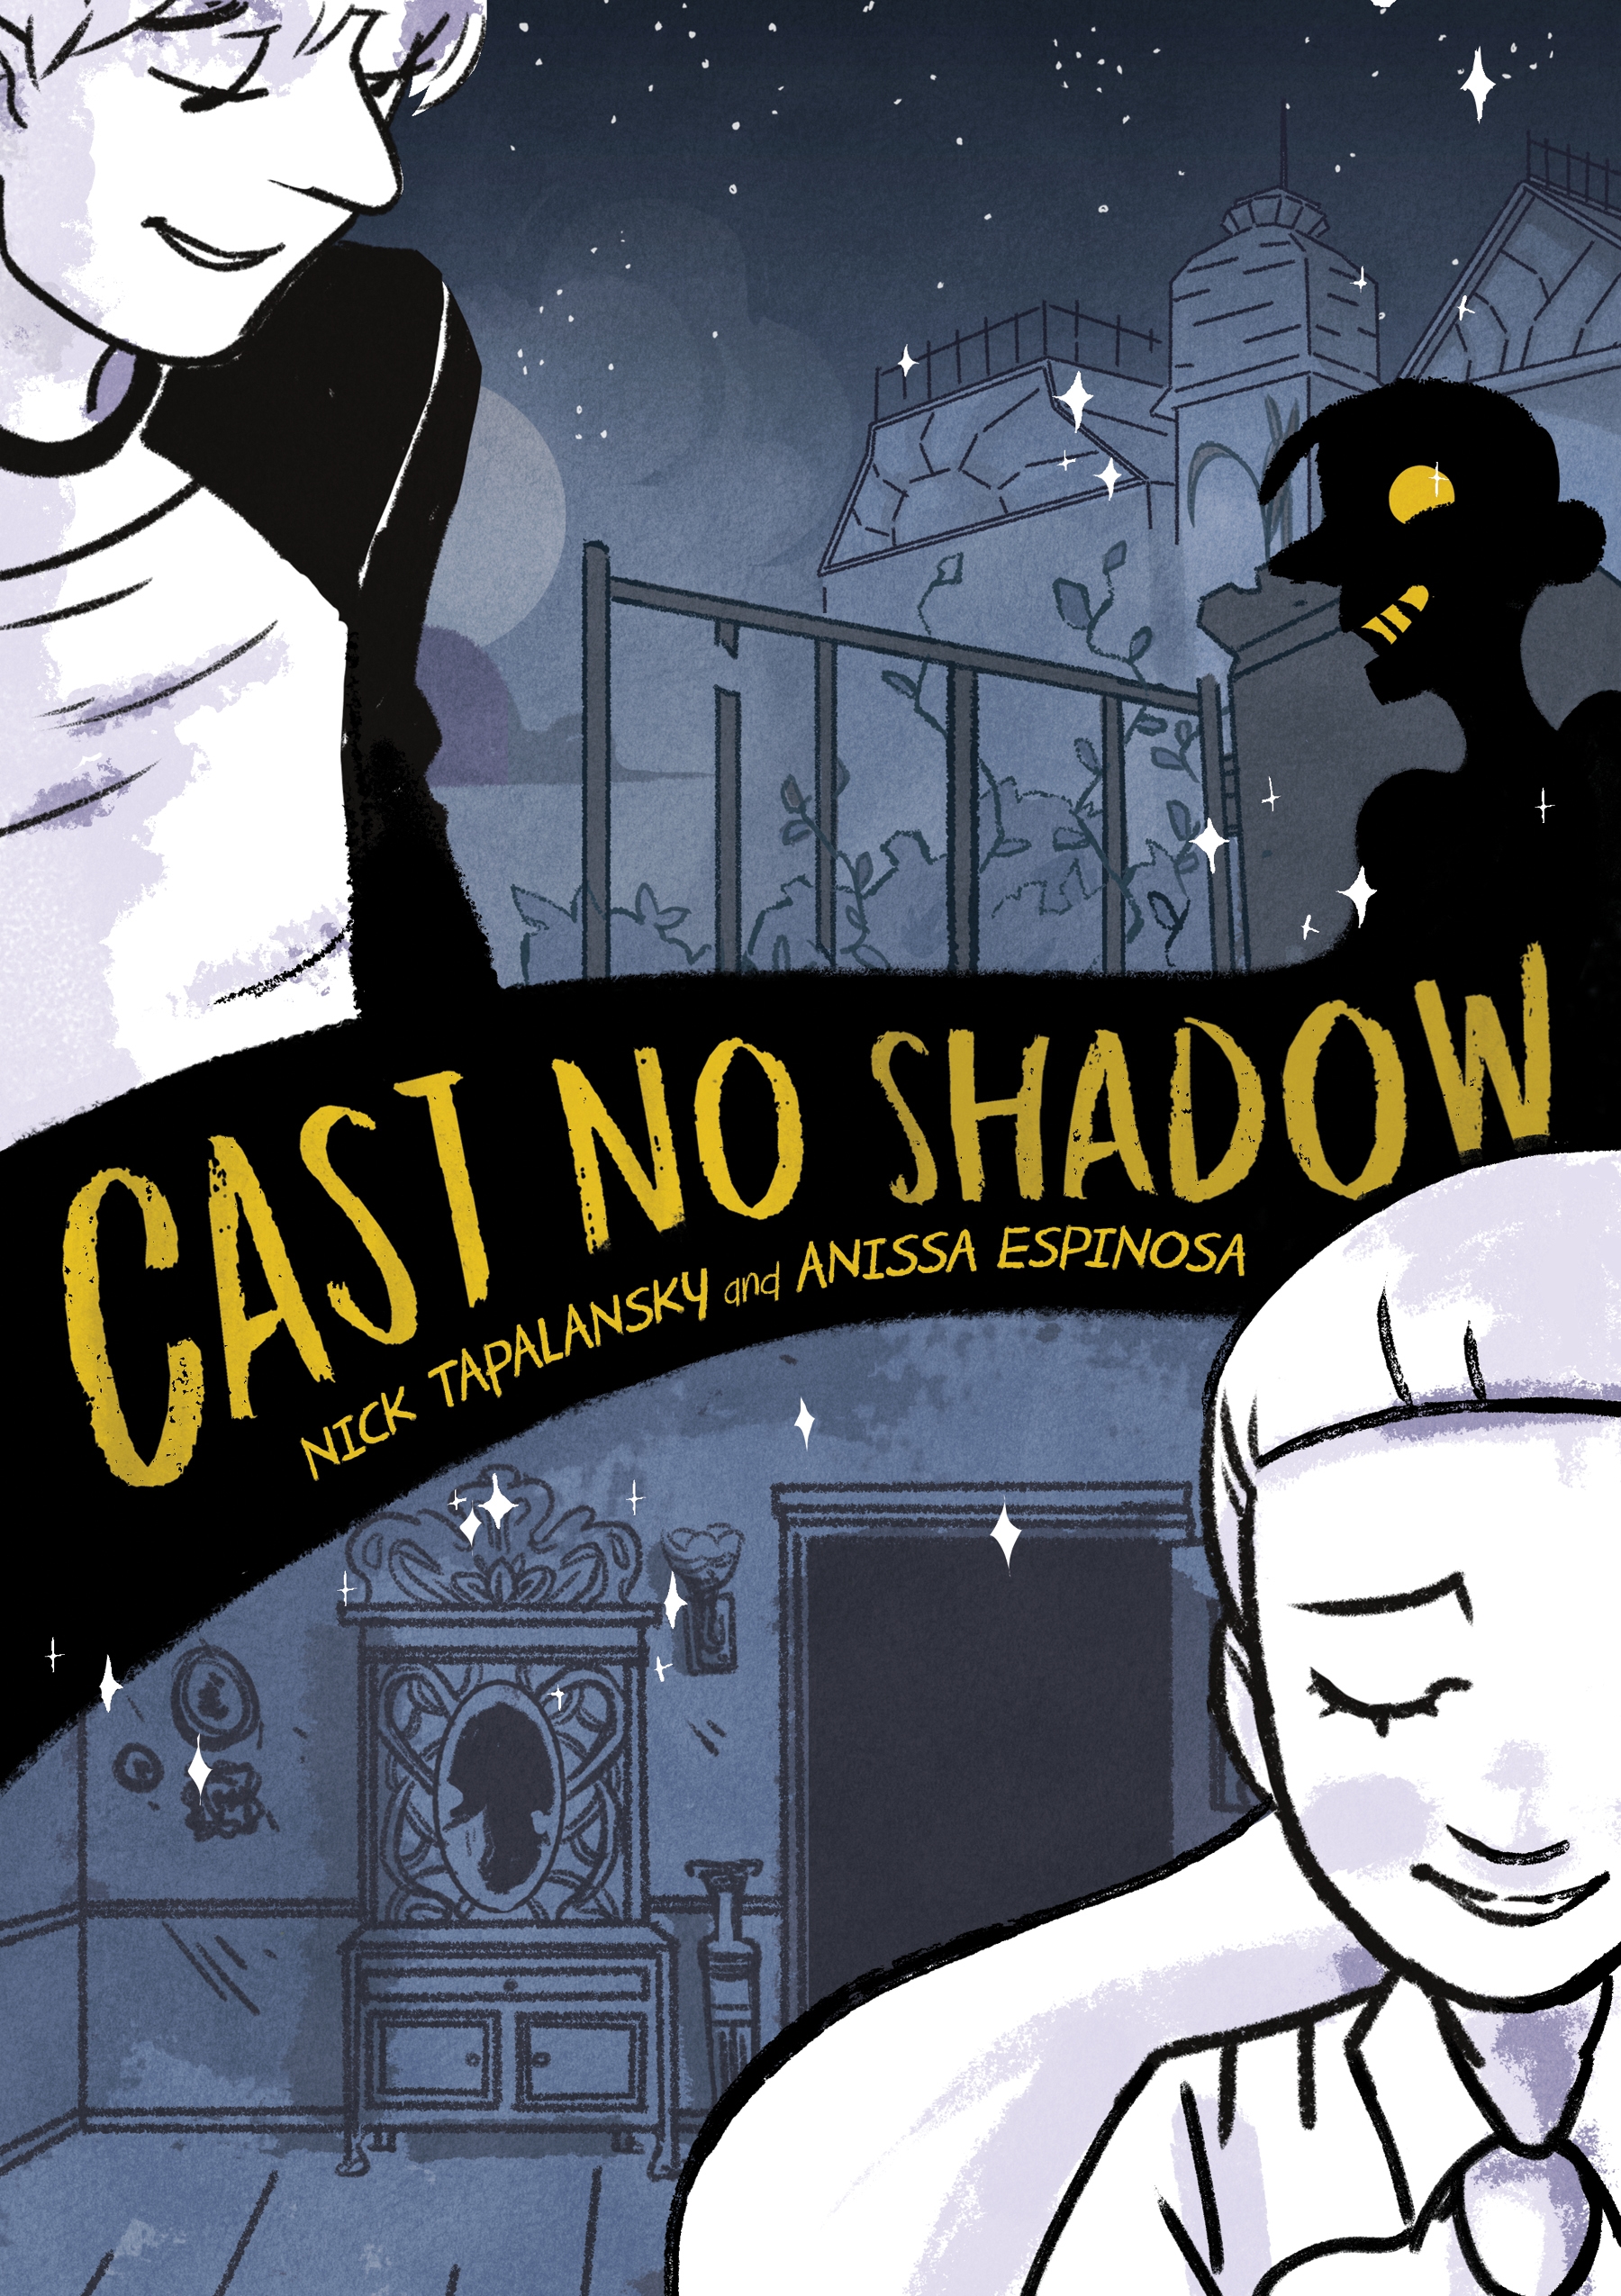 Book Cast No Shadow